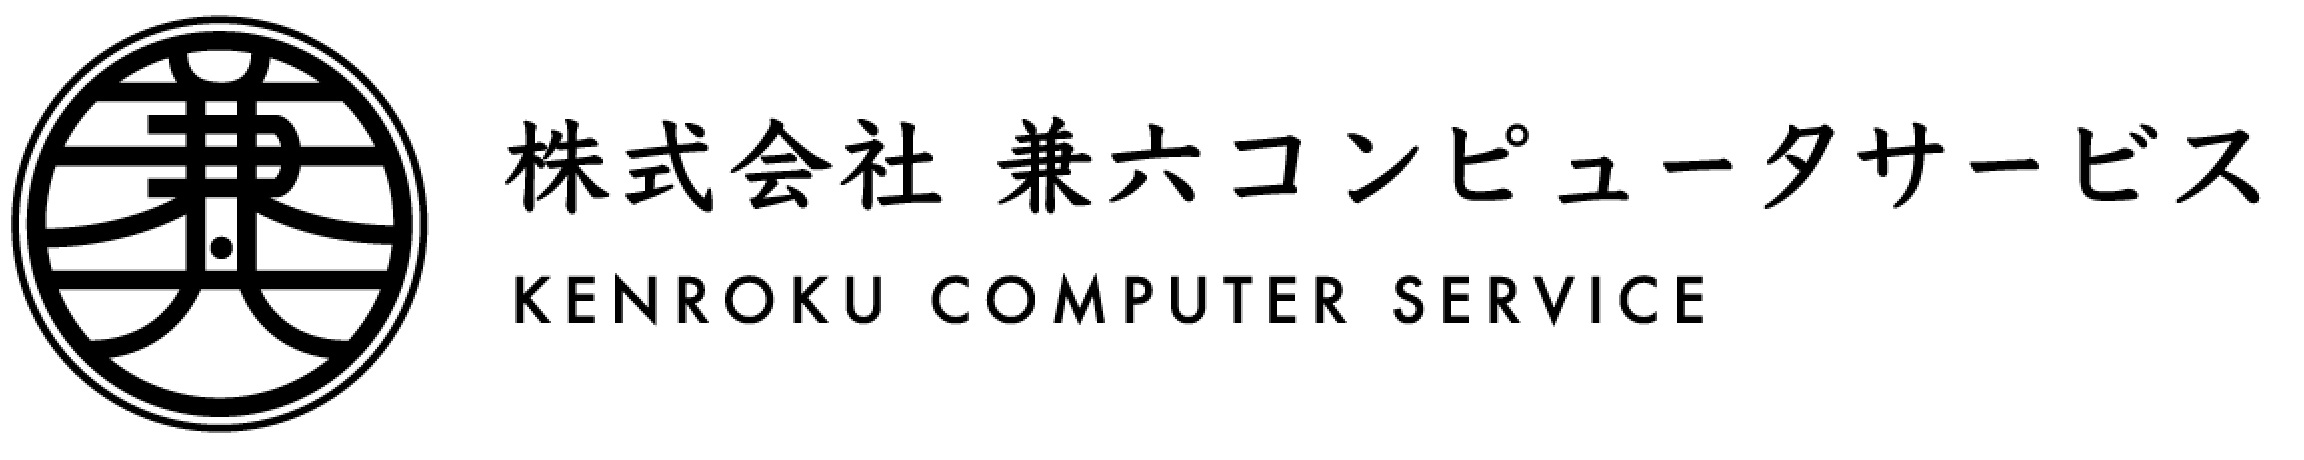 株式会社兼六コンピューターサービス